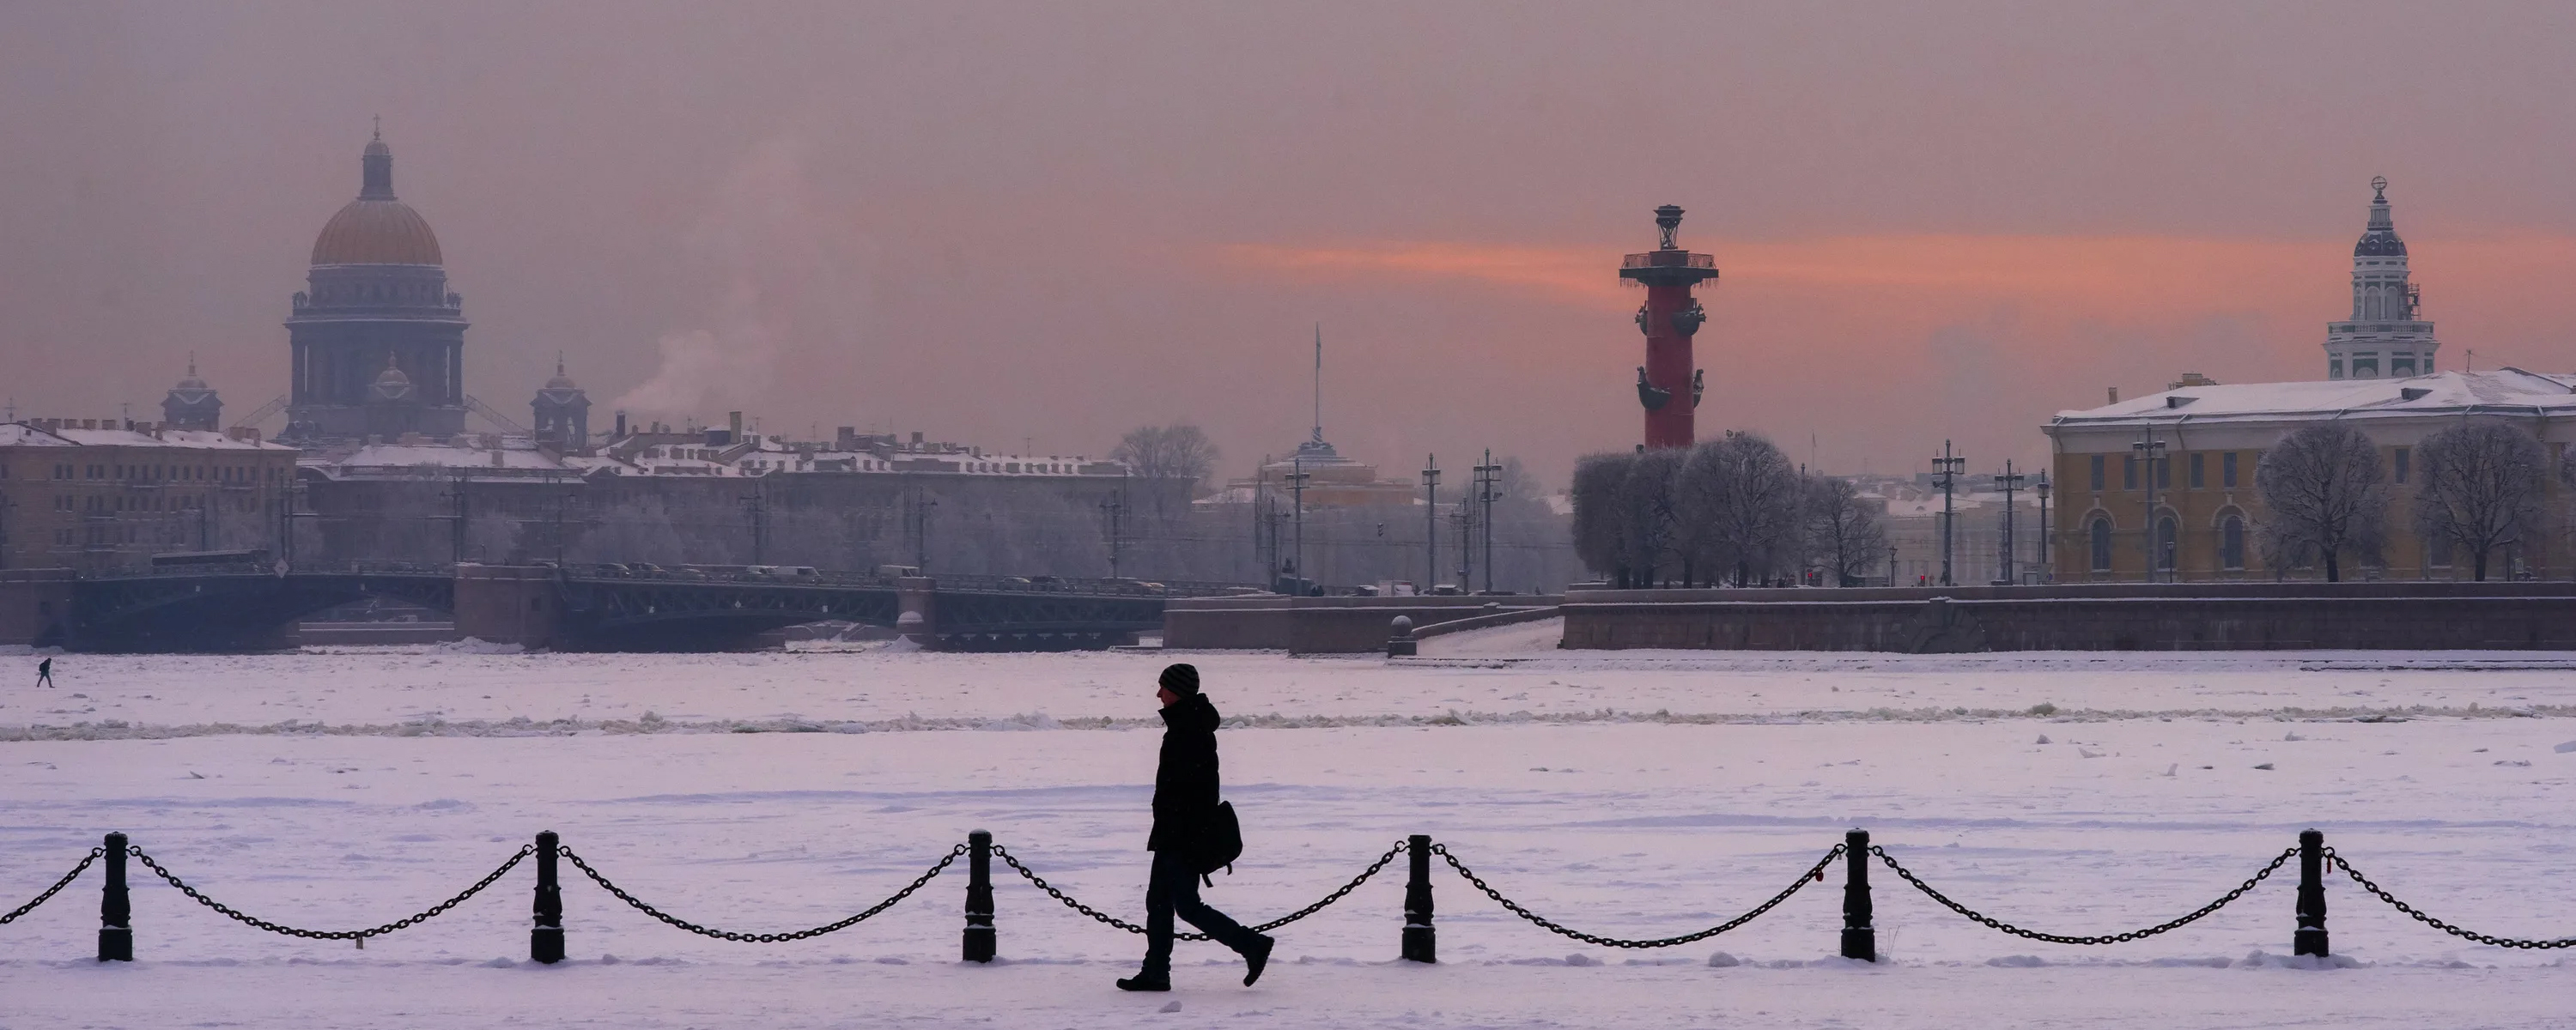 В Петербурге 3 января стало самым холодным днем за всю историю города